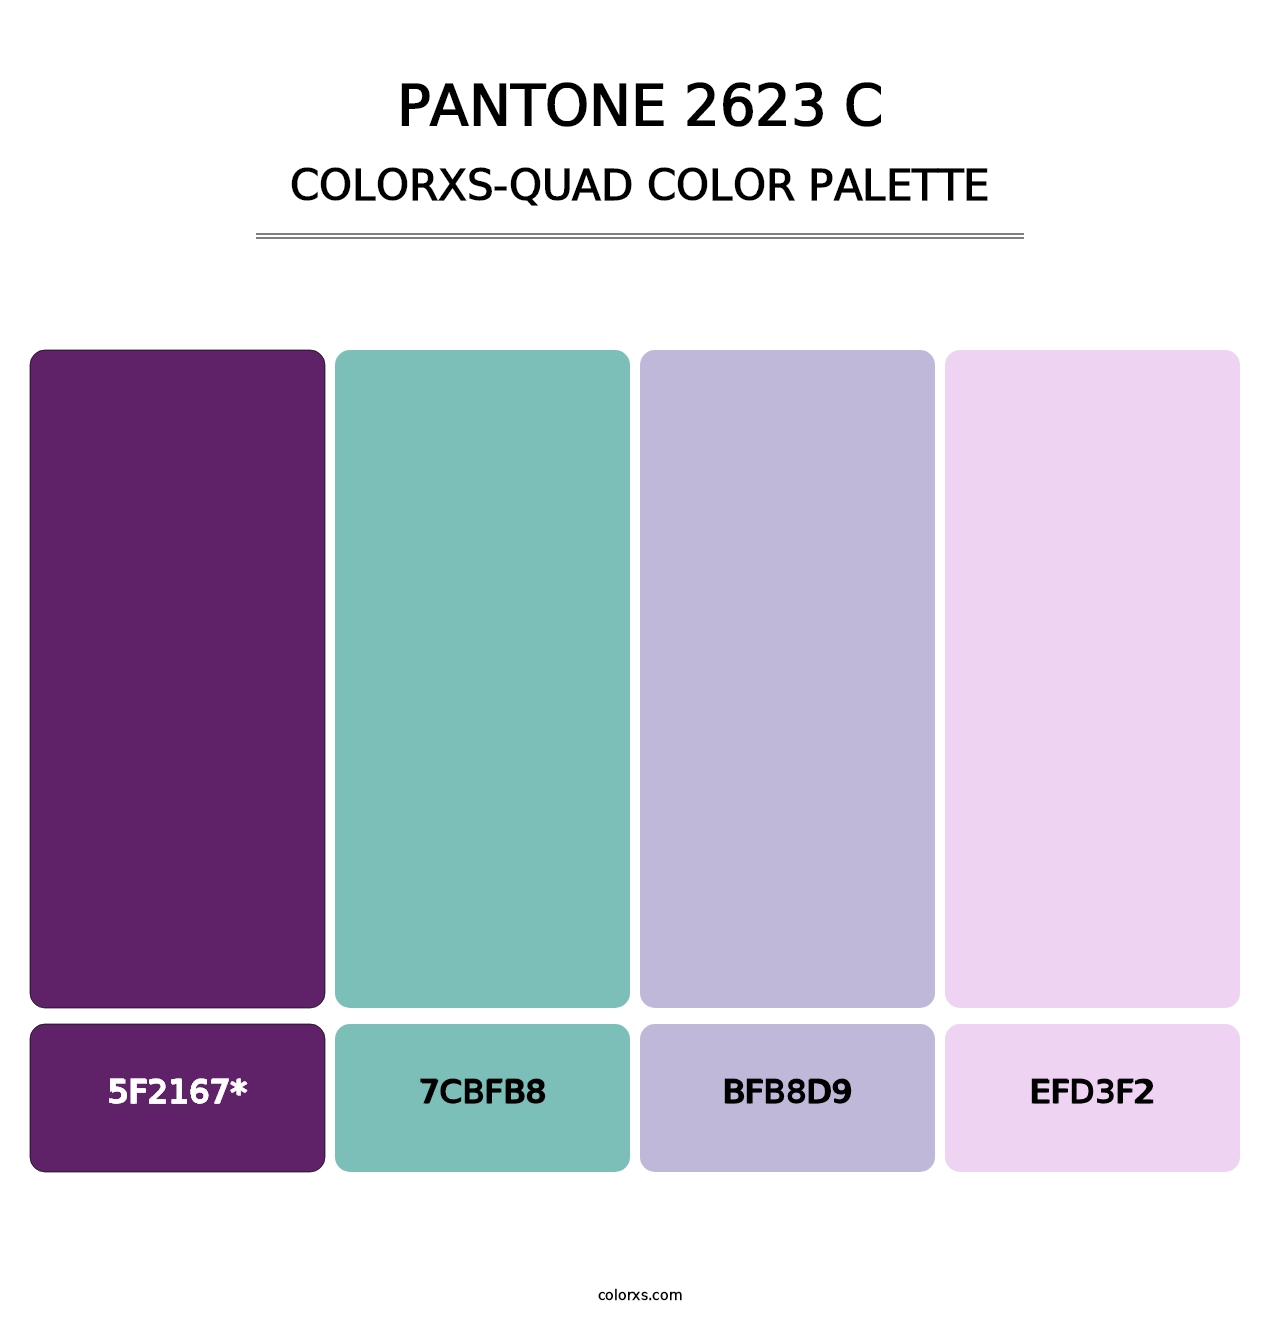 PANTONE 2623 C - Colorxs Quad Palette